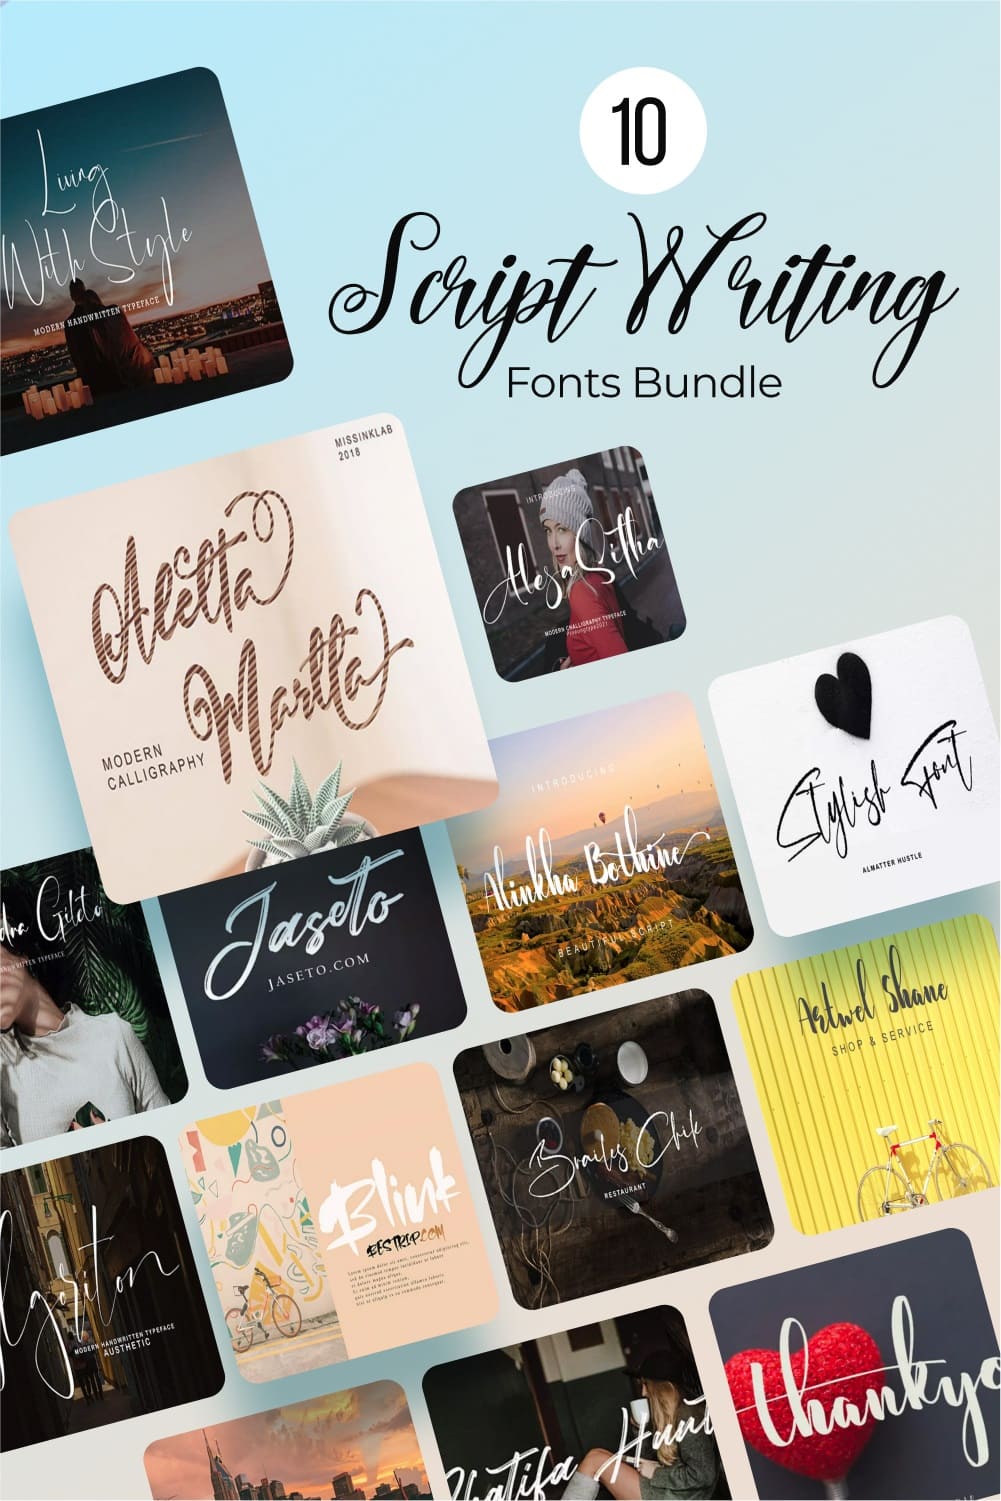 10 script writing fonts bundle Pinterest collage image.